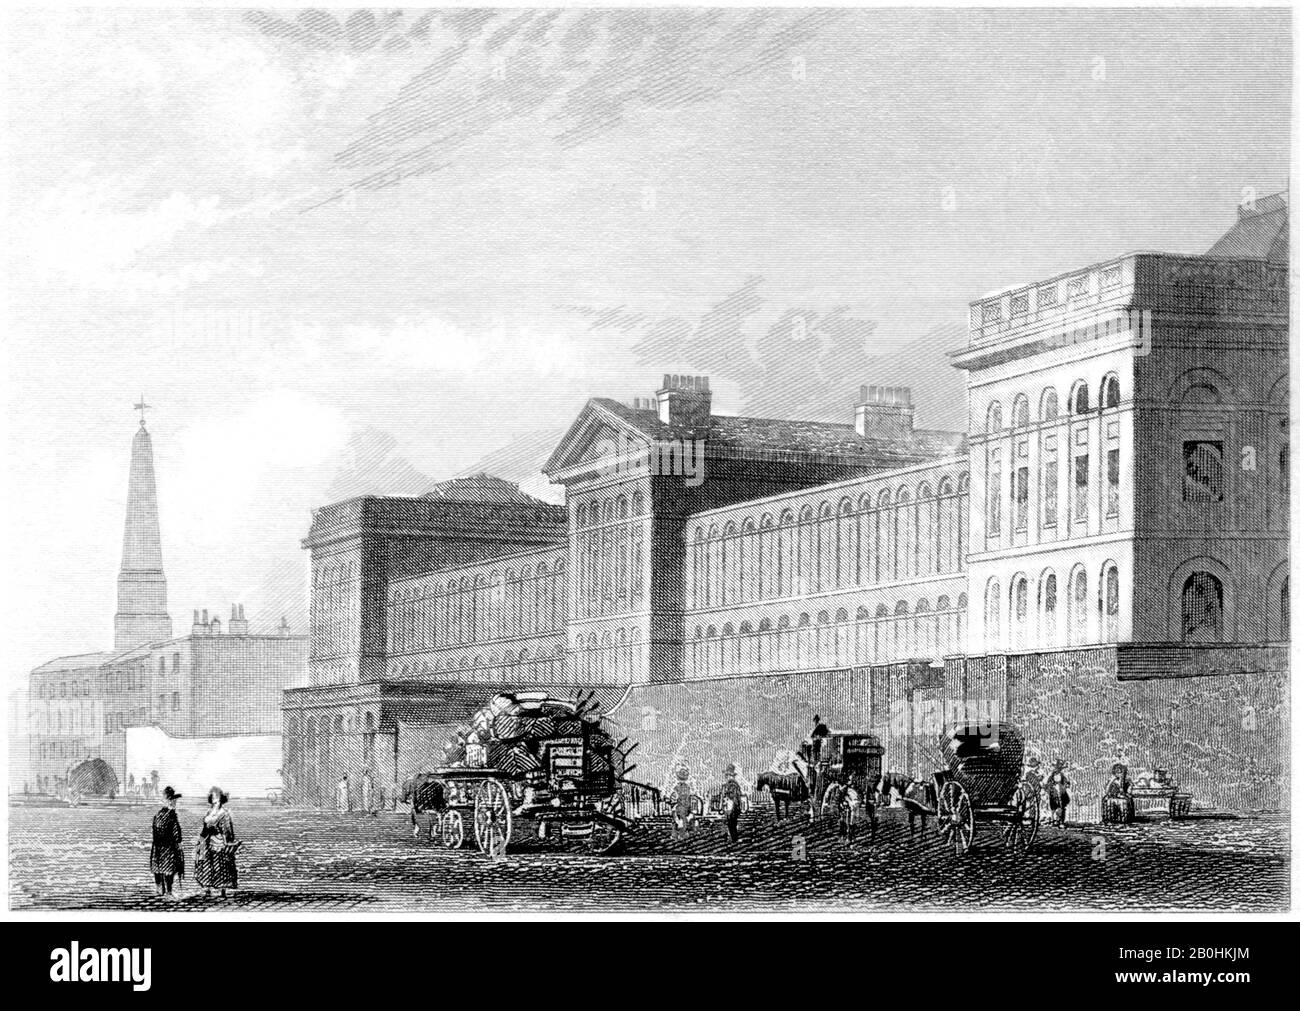 Gravur des St Lukes Hospital, London, gescannte in hoher Auflösung aus einem Buch, das im Jahr 1851 gedruckt wurde. Es wird angenommen, dass dieses Bild frei von allen Urheberrechten ist. Stockfoto